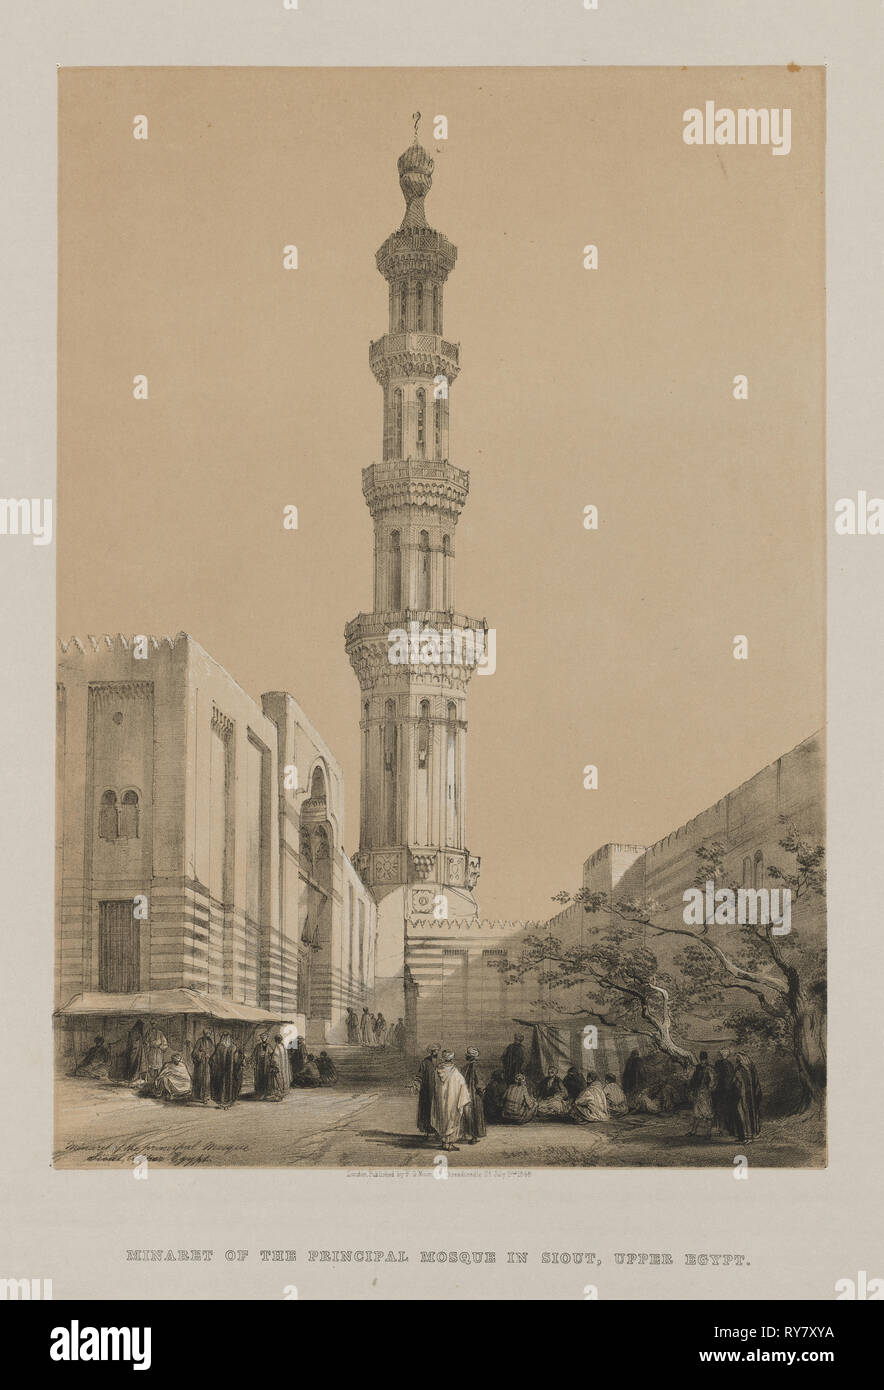 L'Egypte et la Nubie, Volume III : Minaret de la mosquée principale, Siout Haute Égypte, 1849. Louis Haghe (britannique, 1806-1885), F.G.Lune, 20 Threadneedle Street, Londres, après que David Roberts (1796-1864), britannique. Lithographie couleur ; feuille : 44,9 x 43,5 cm (17 11/16 x 17 1/8 in.) ; image : 34,2 x 24 cm (13 x 7/16 9 7/16 po Banque D'Images